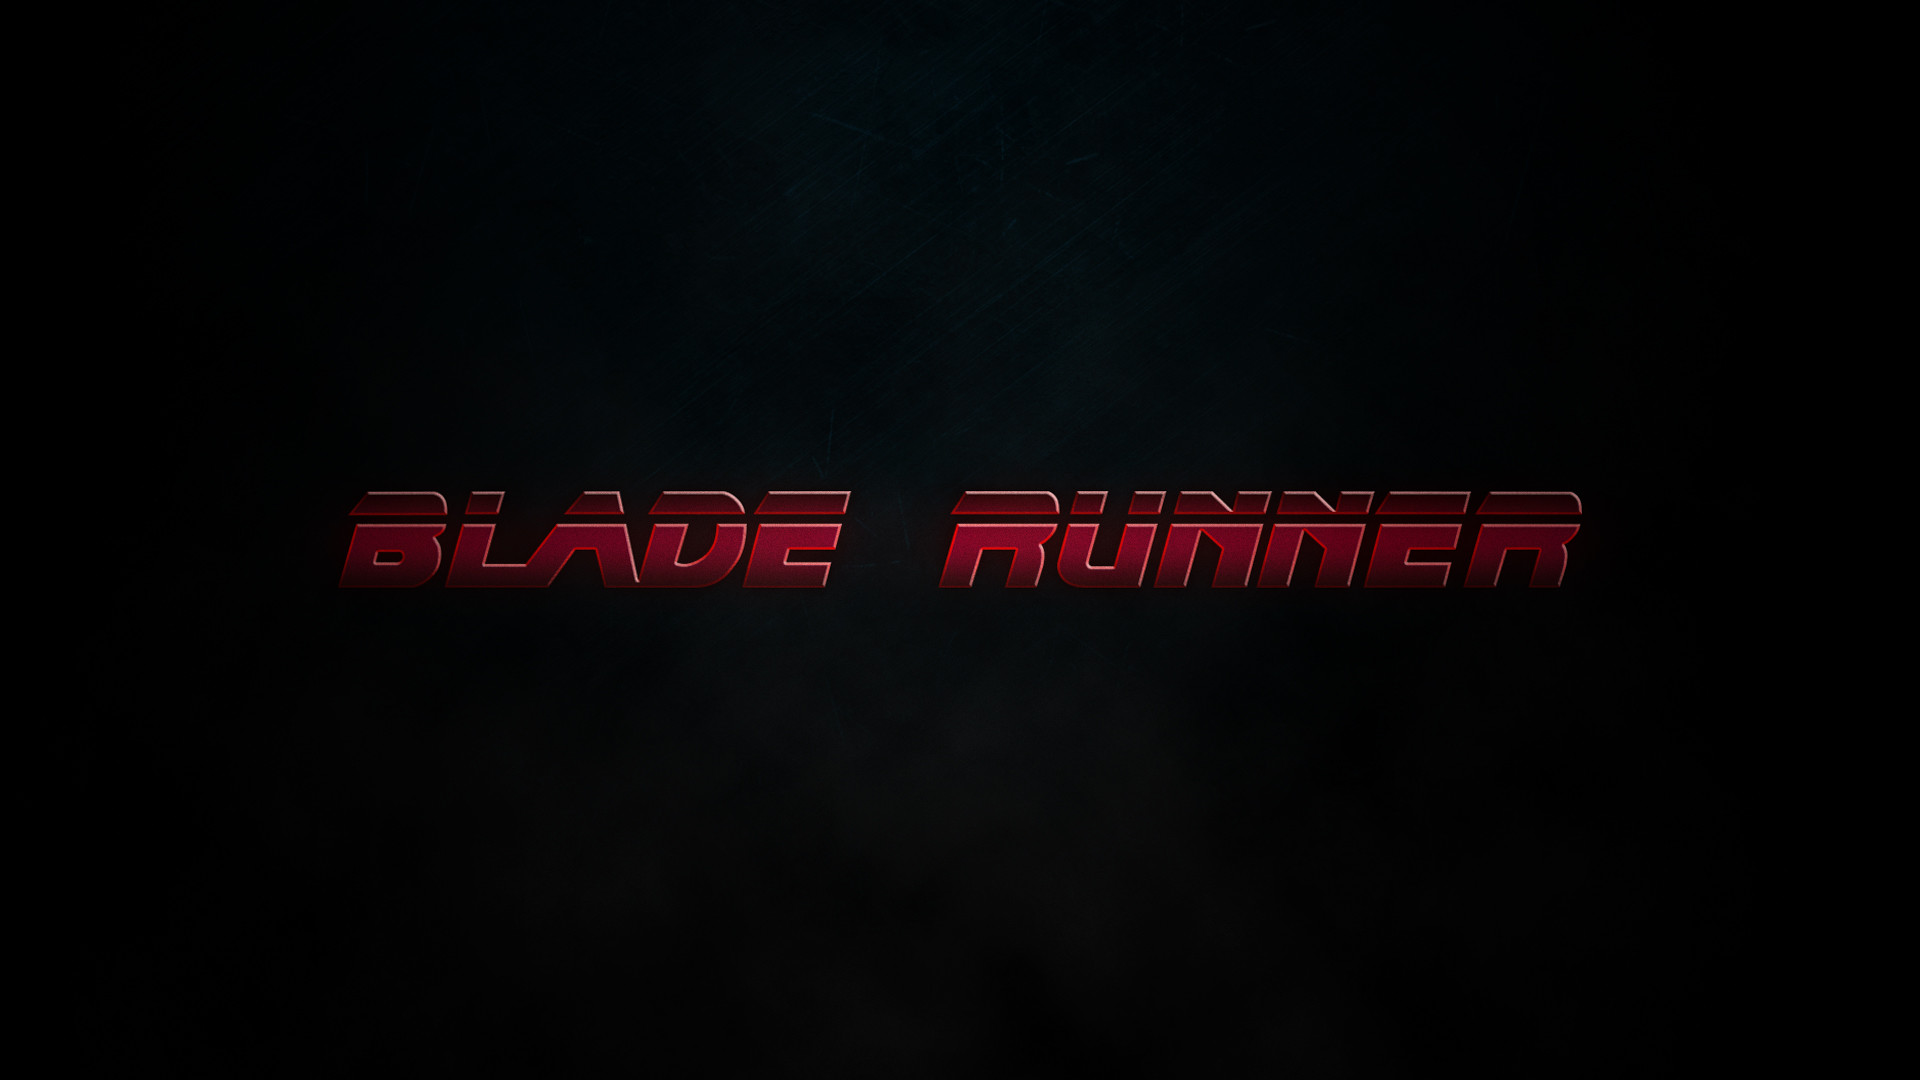 Blade runner 2049 desktop wallpapers